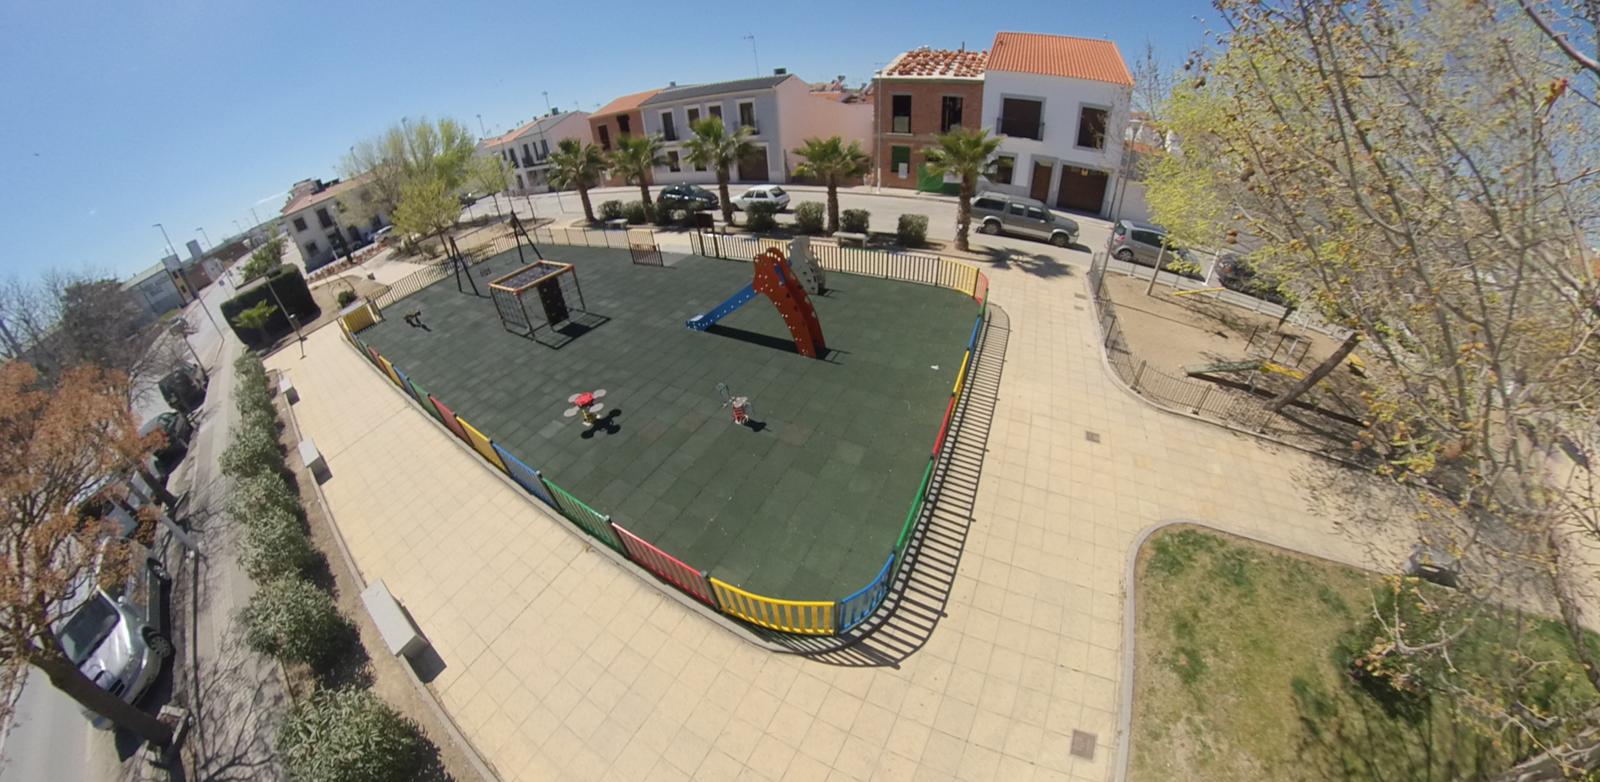  Urbanismo concluye la reforma del parque infantil de El Torilejo y lo dota de mayor seguridad y confort 1